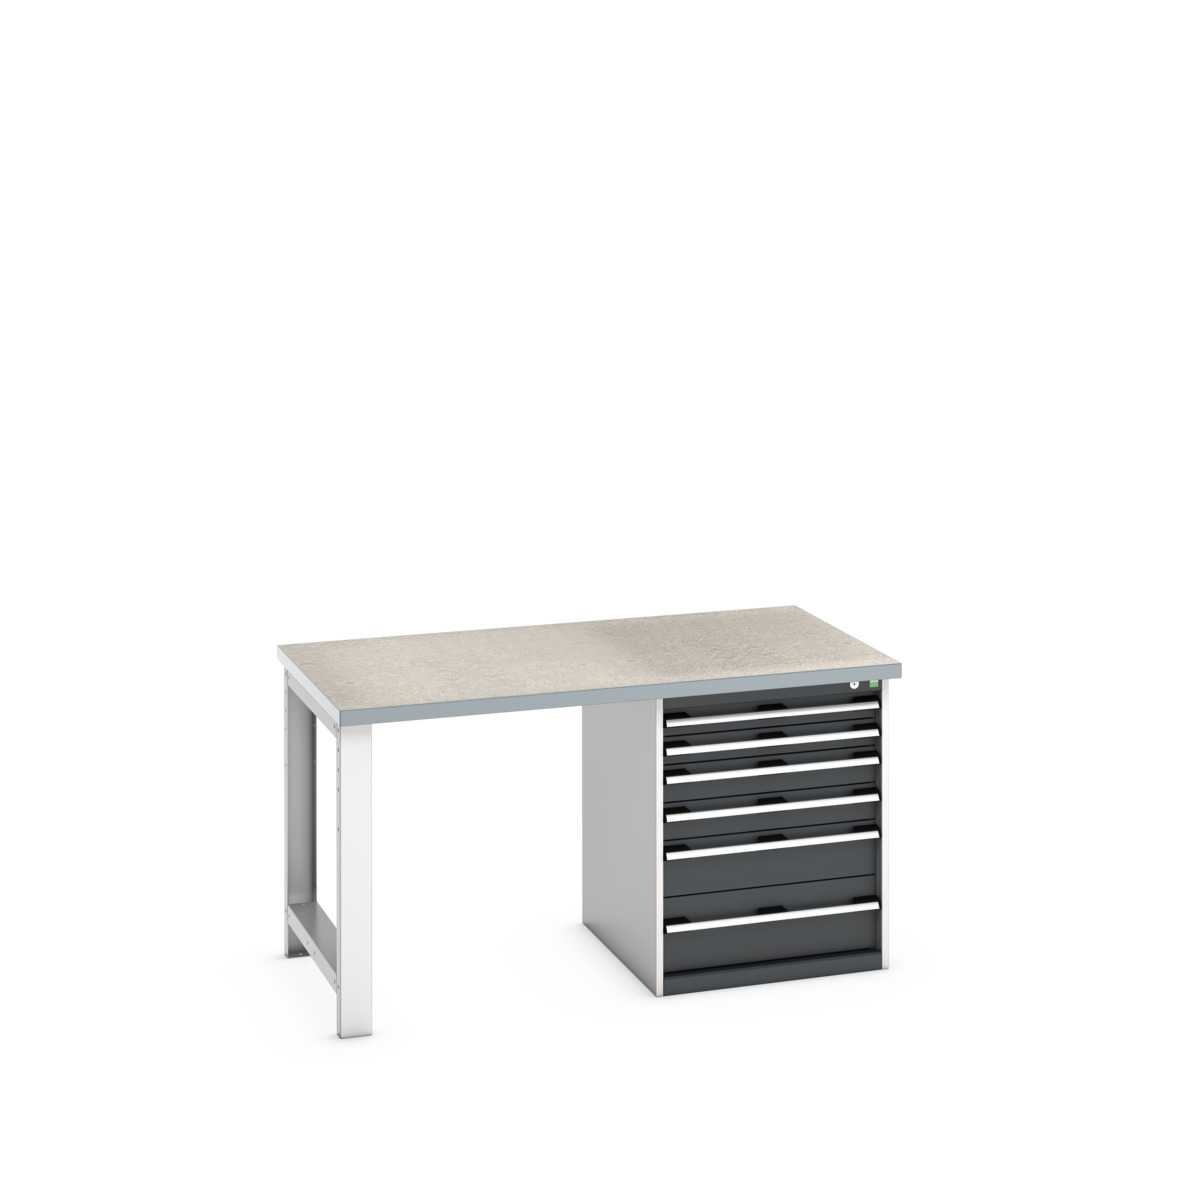 41004114.19V - cubio pedestal bench (lino)